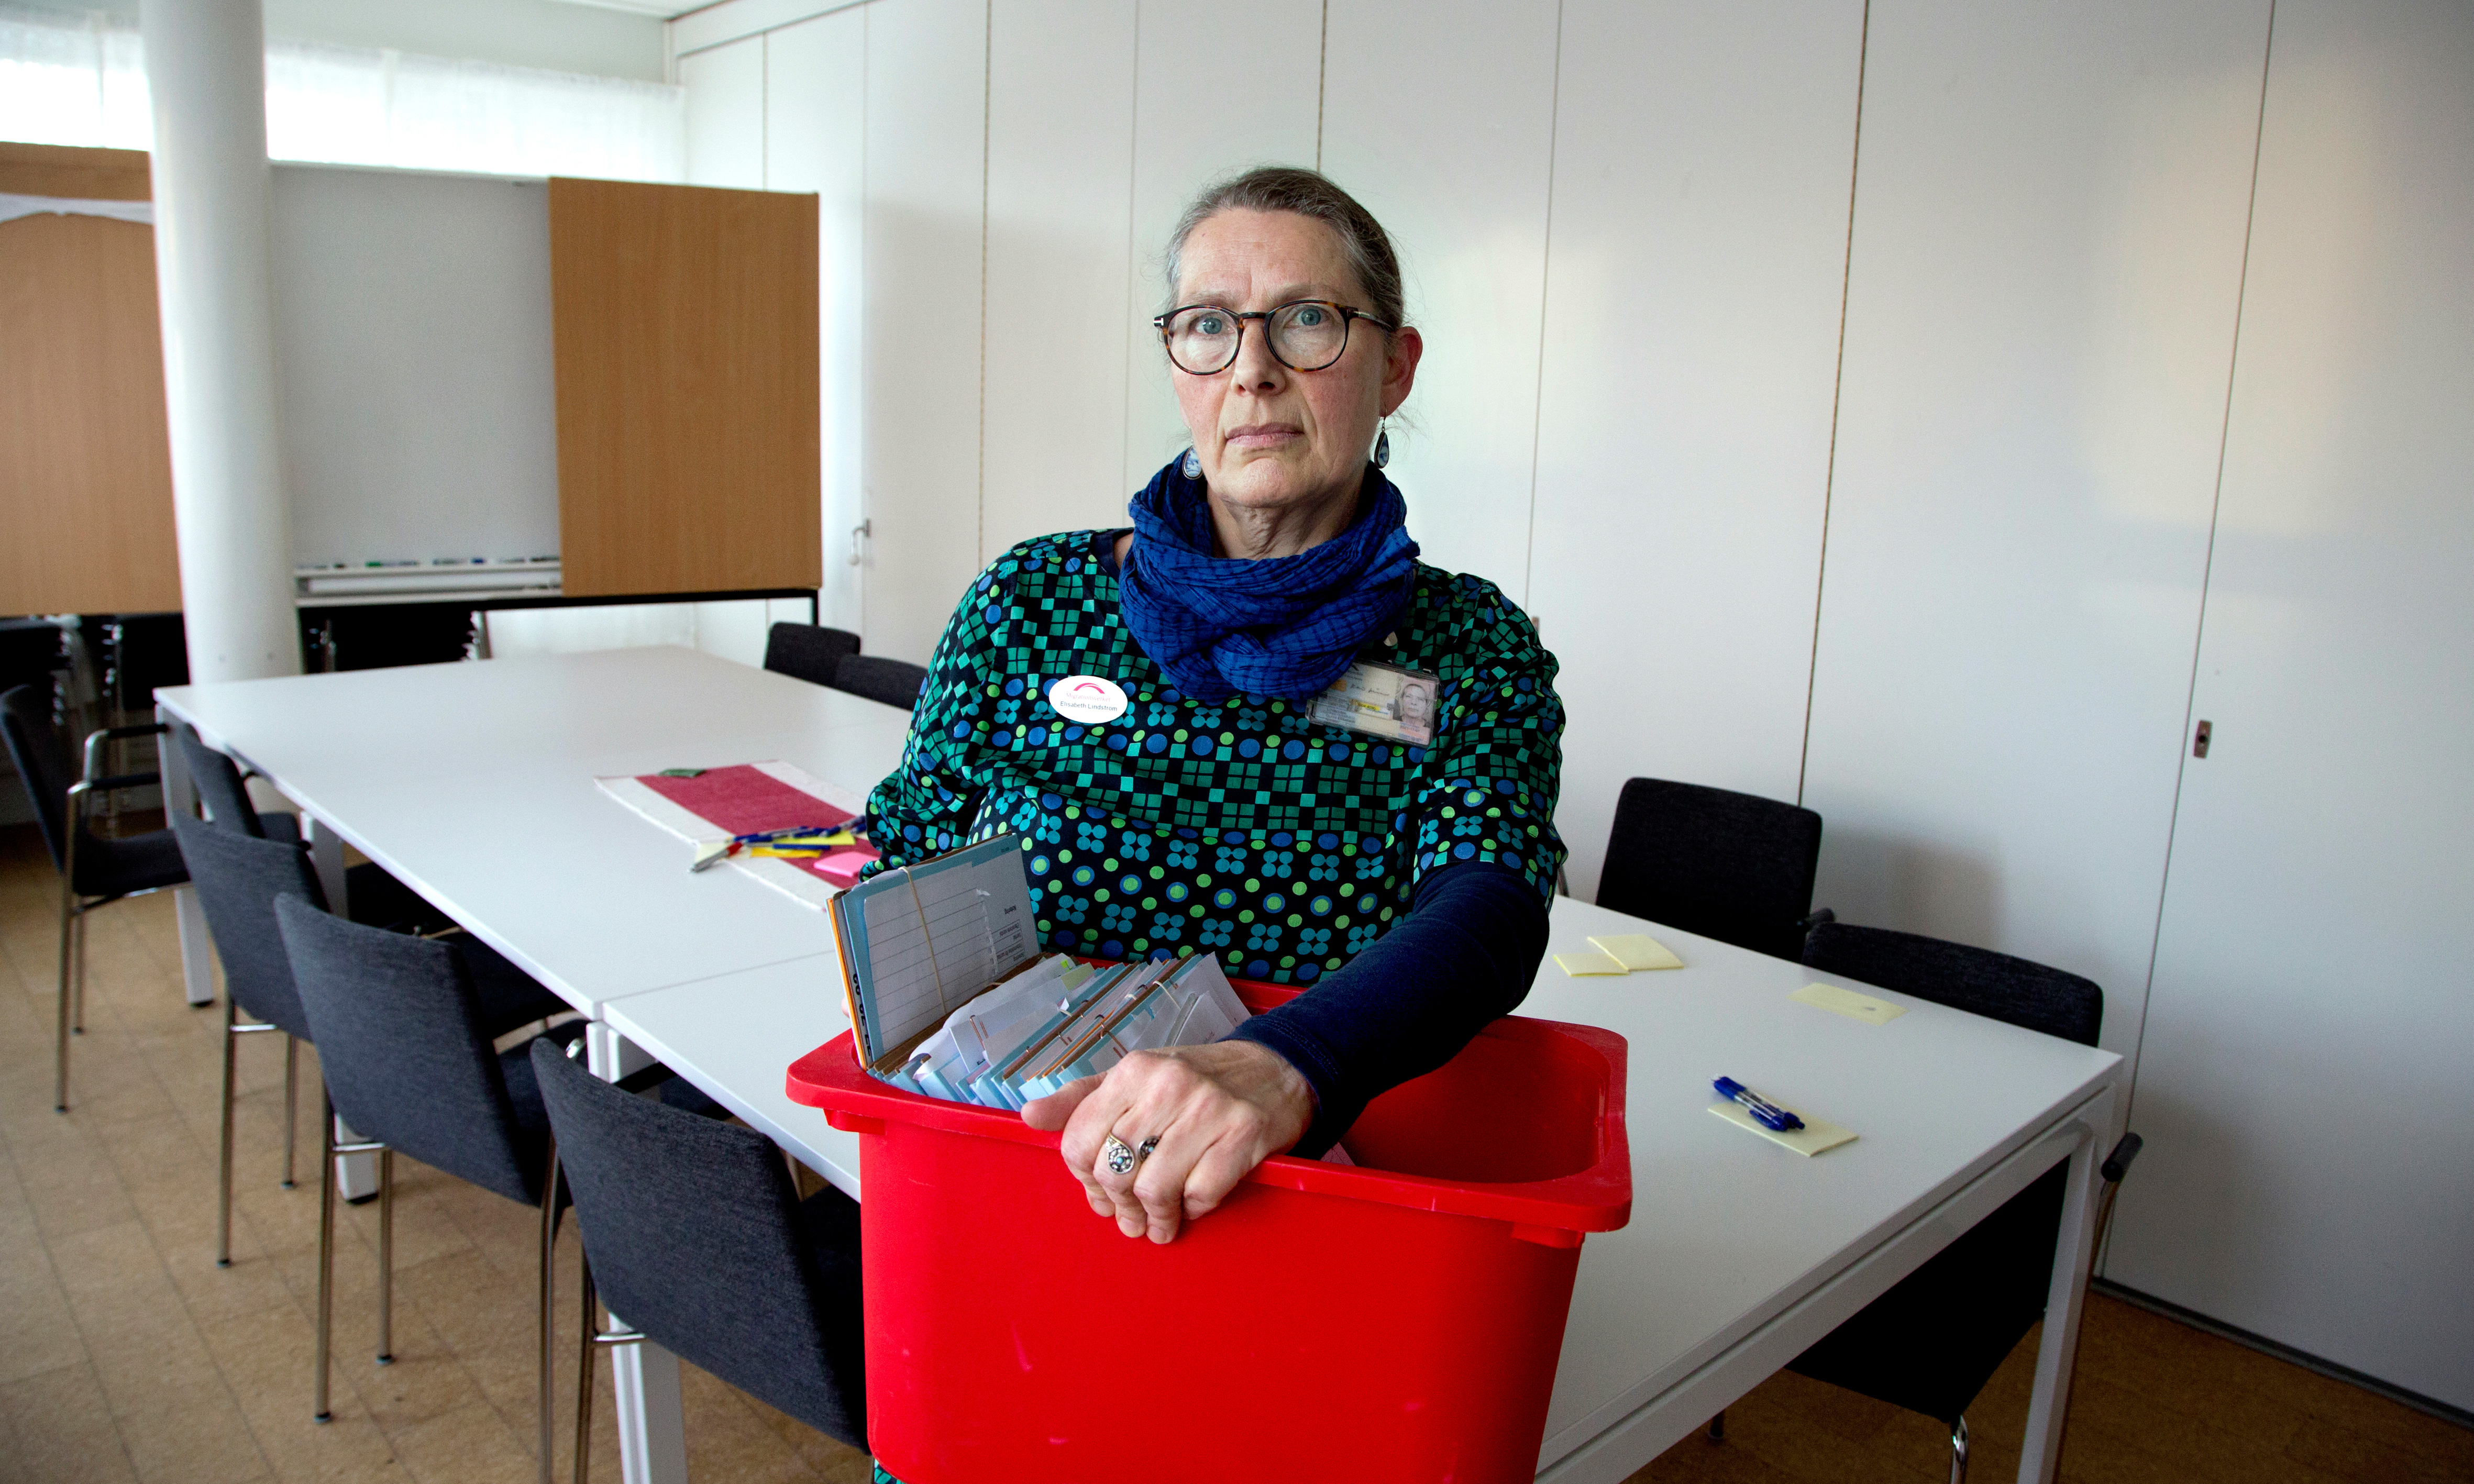 Beskedet om att fem enheter på Migrationsverket i Gävleborgs län ska läggas ned kom som en chock, berättar Elisabeth Lindström, arbetsplatsombud.